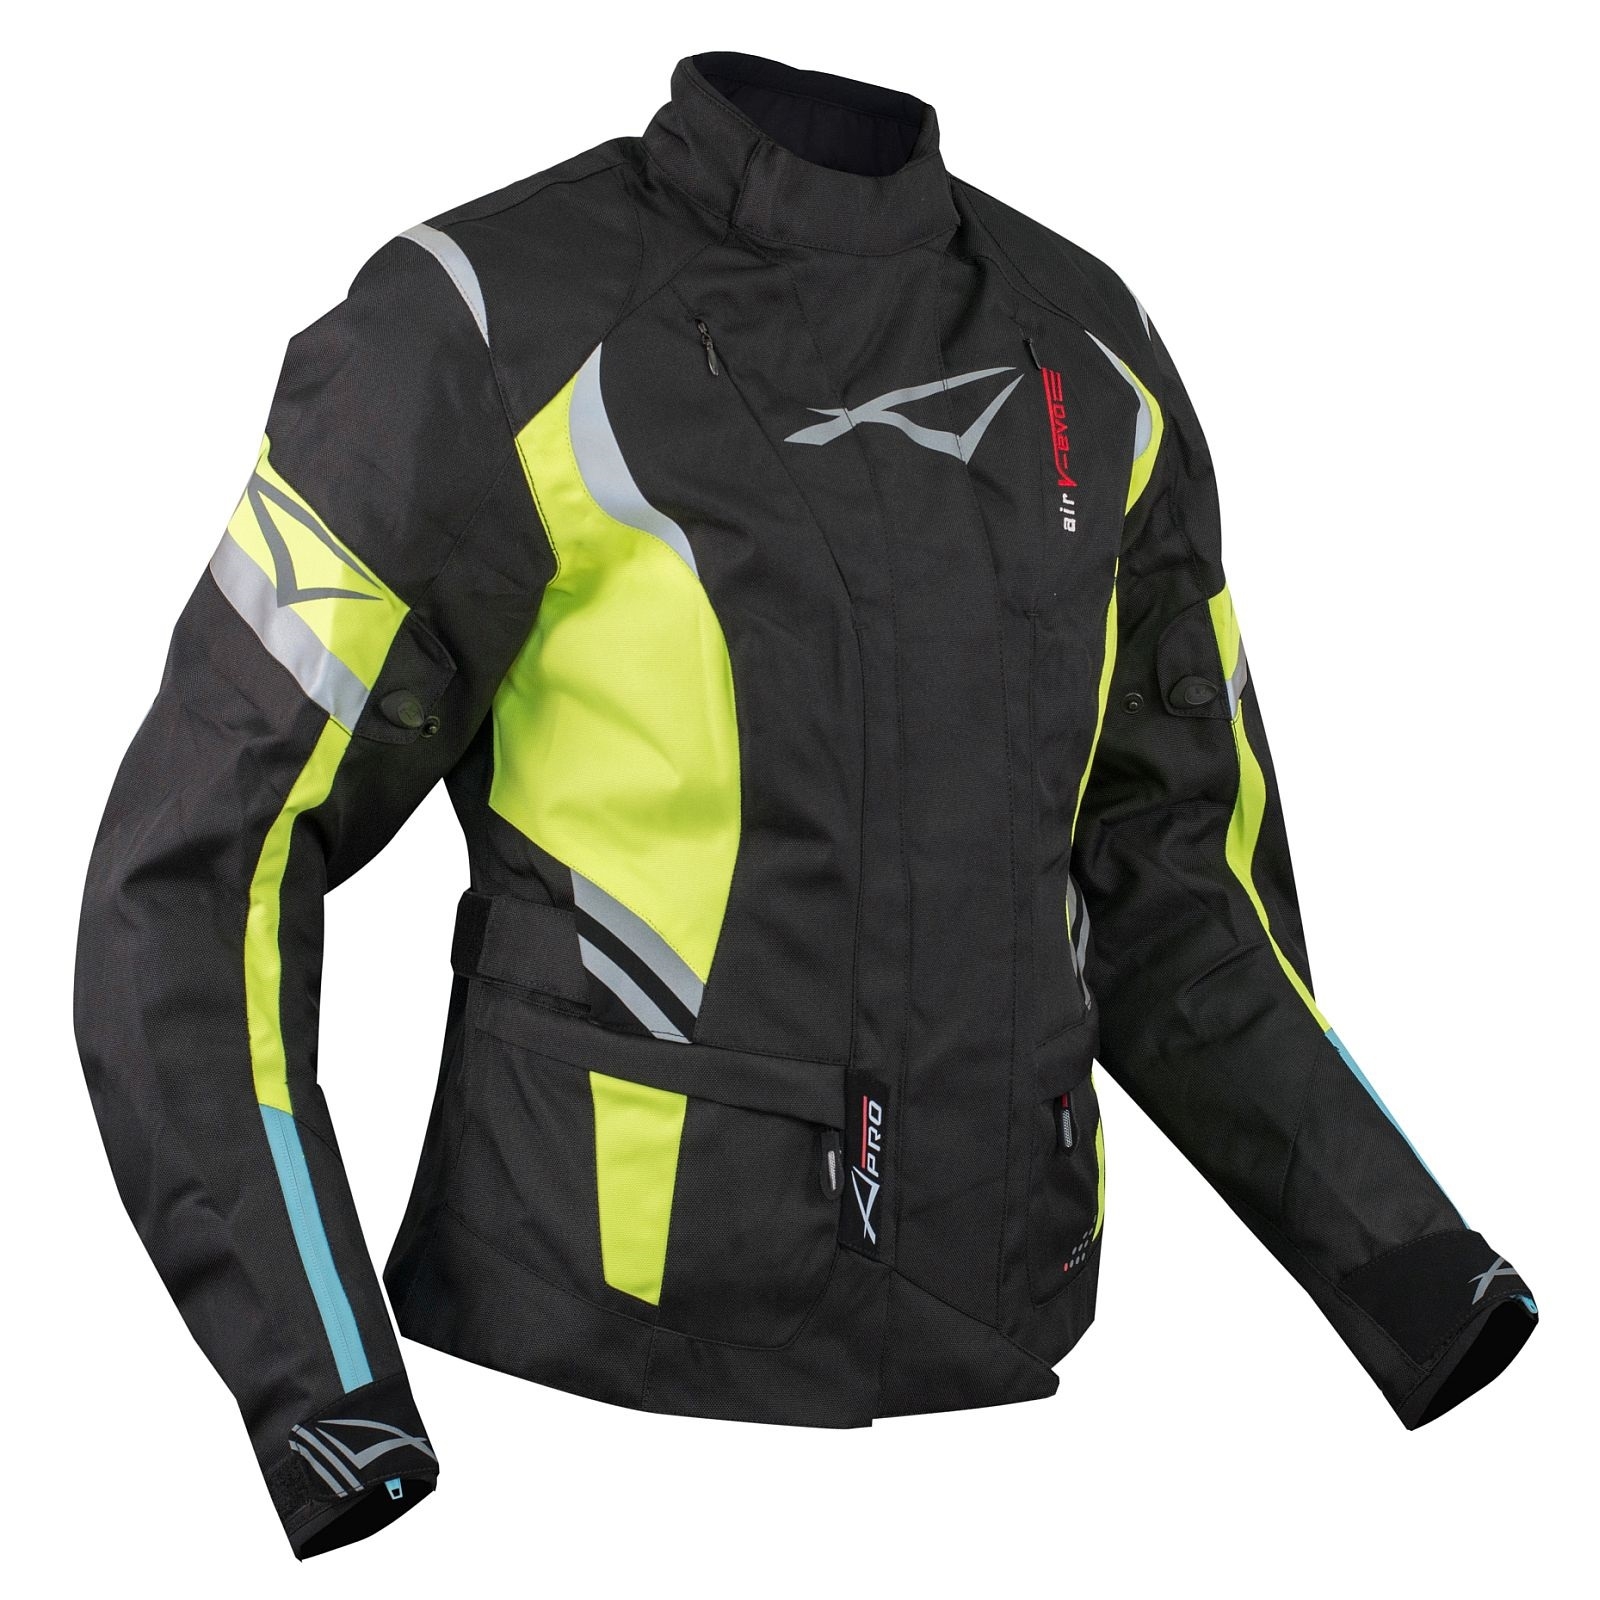 robo seco Año nuevo Jacket Térmicos Extraíbles Protectores Impermeable Chaqueta Moto Mujeres  Fluo | eBay